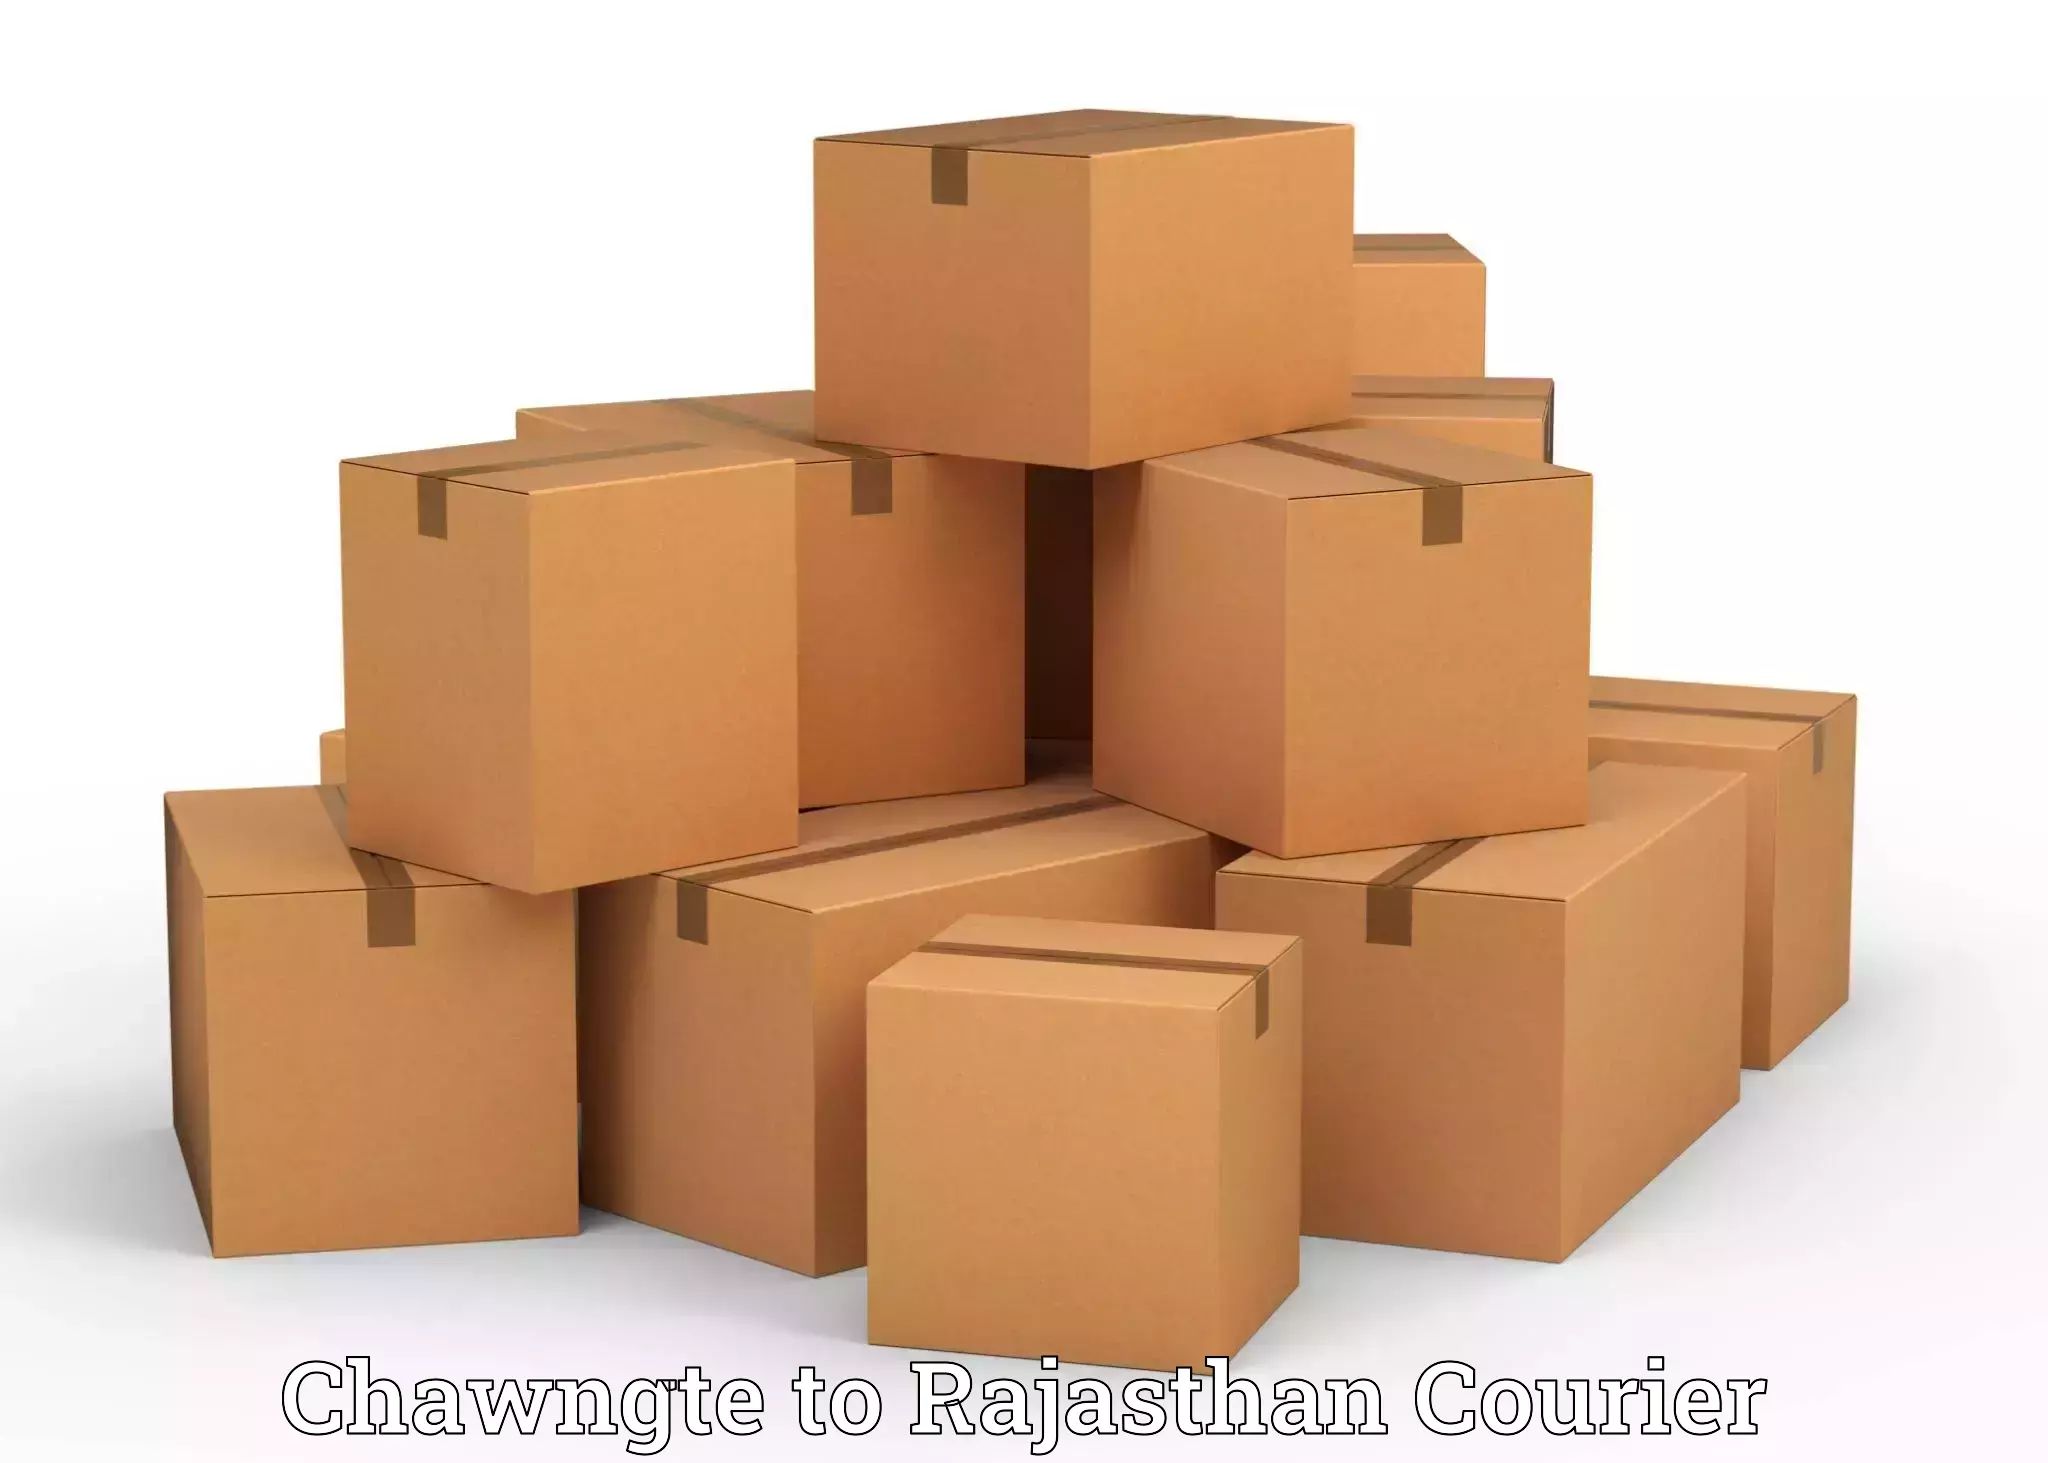 Home goods moving company Chawngte to Bhawani Mandi